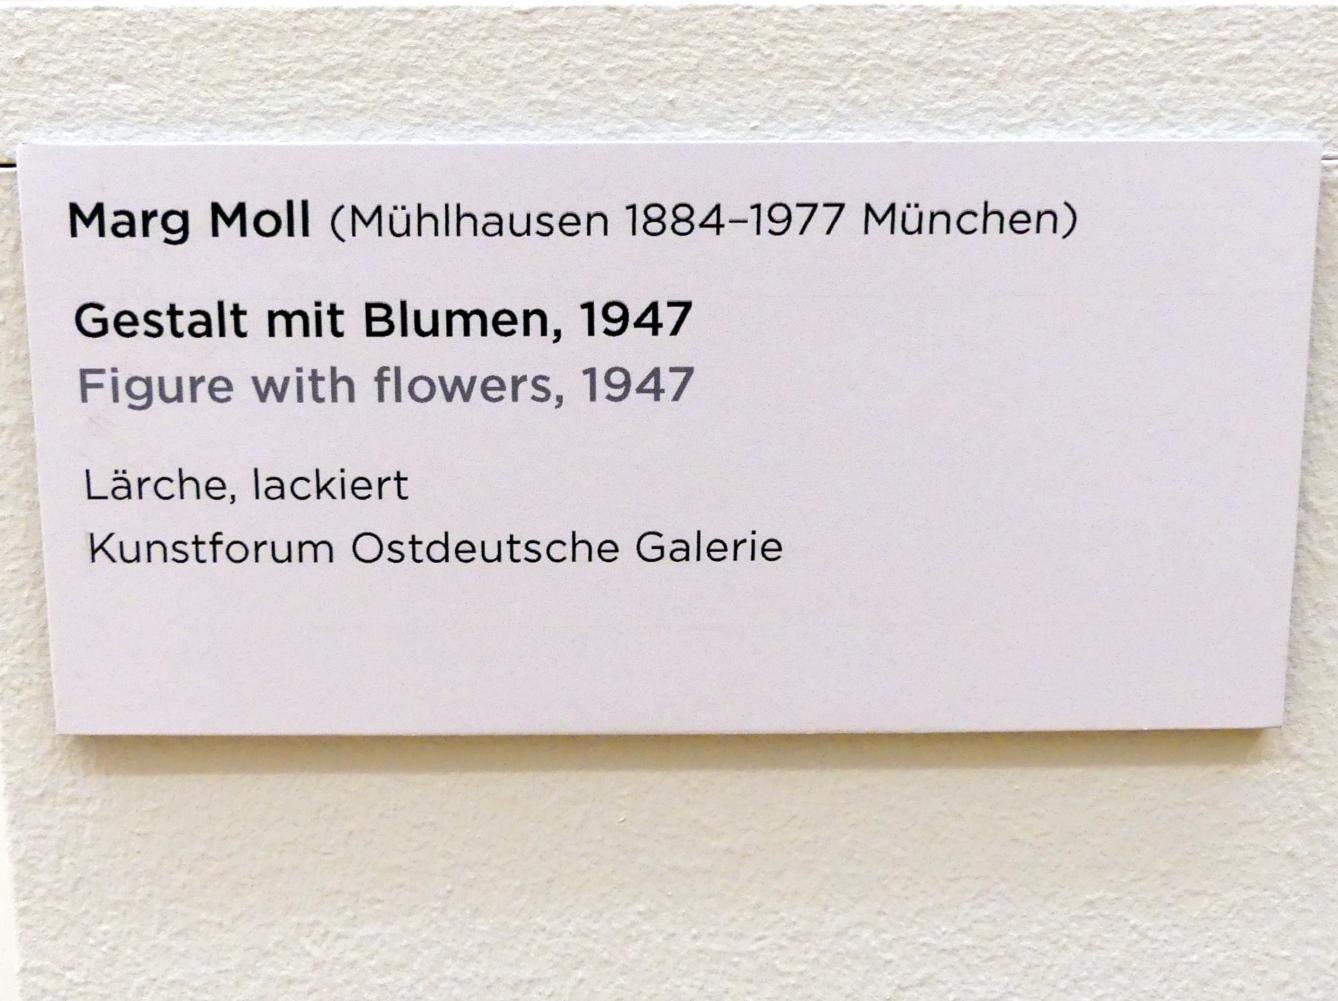 Marg Moll (1947), Gestalt mit Blumen, Regensburg, Ostdeutsche Galerie, Saal 8, 1947, Bild 4/4